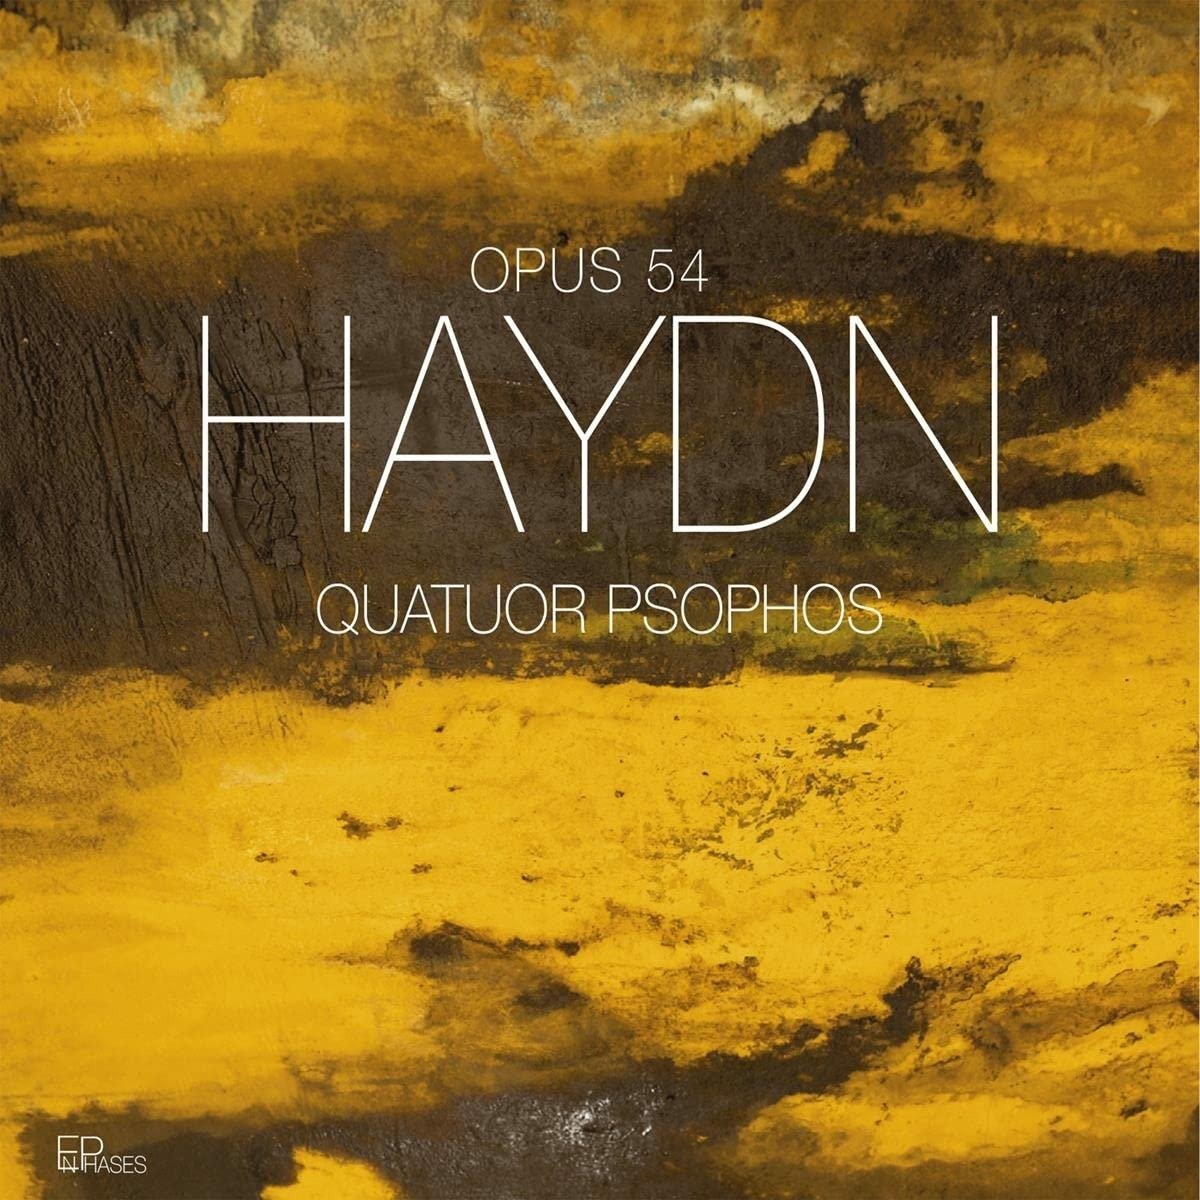 CD Shop - QUATUOR PSOPHOS HAYDN: OPUS 54